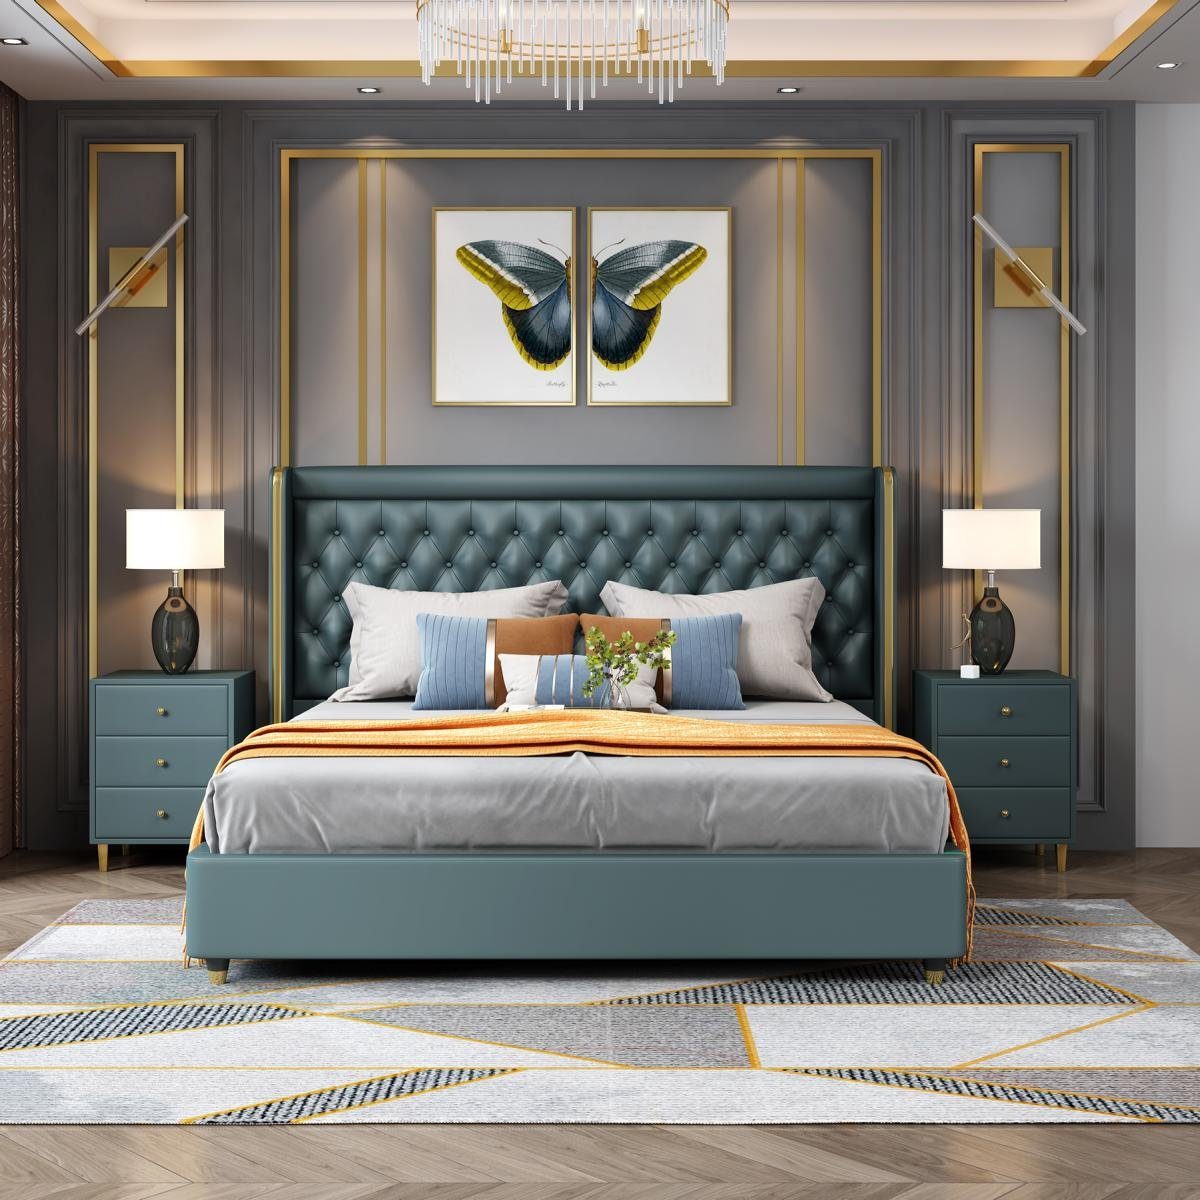 JVmoebel Bett, Klassisches Bett Holz Doppelbett Landhaus Echtes Betten Grün Stil